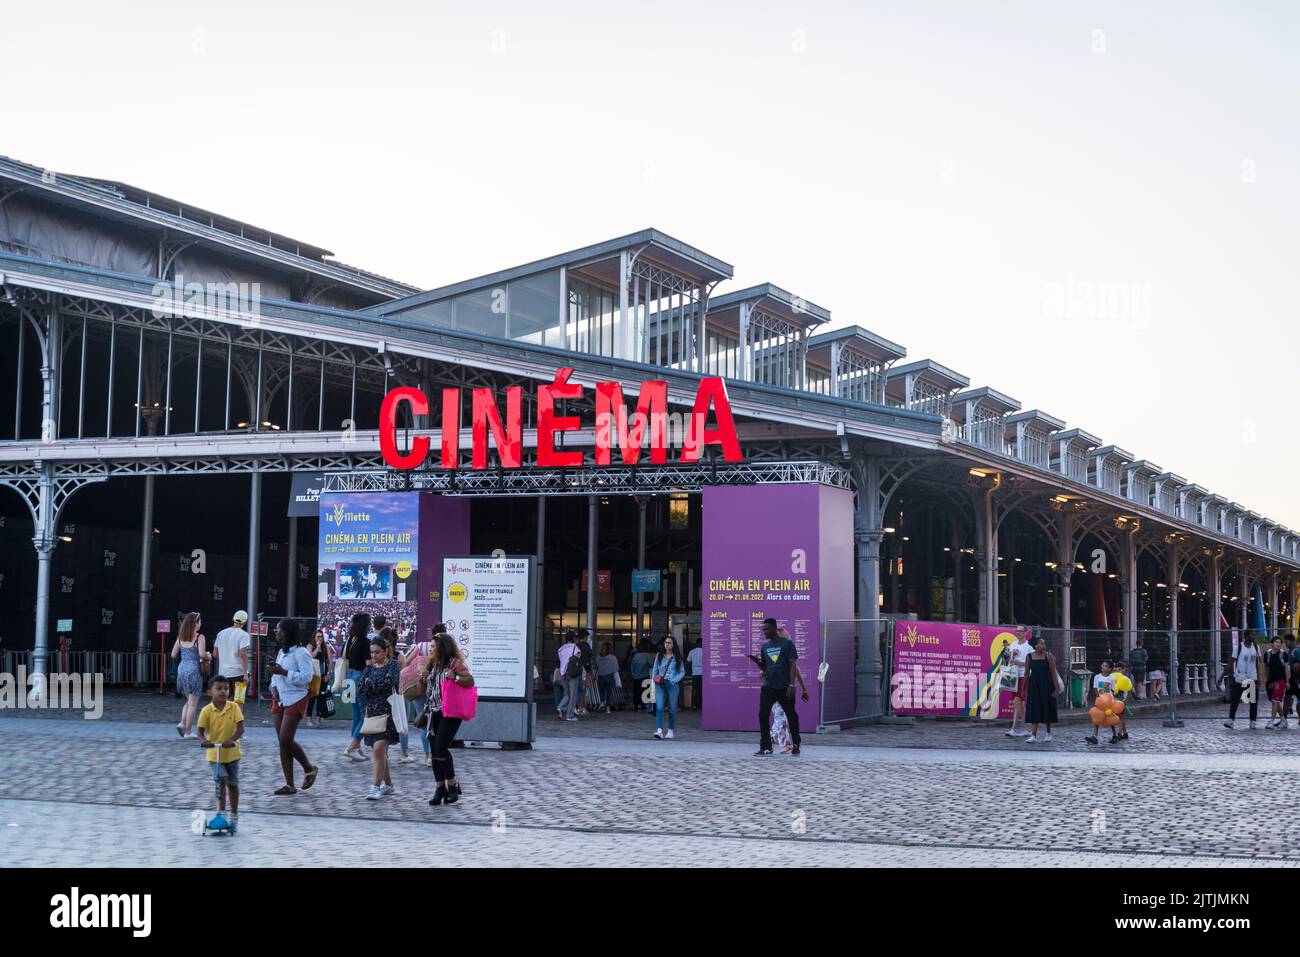 La Grande halle de la Villette, site de foires et d'événements culturels et de cinéma en plein air en été dans le Parc de la Villette, Paris, France Banque D'Images